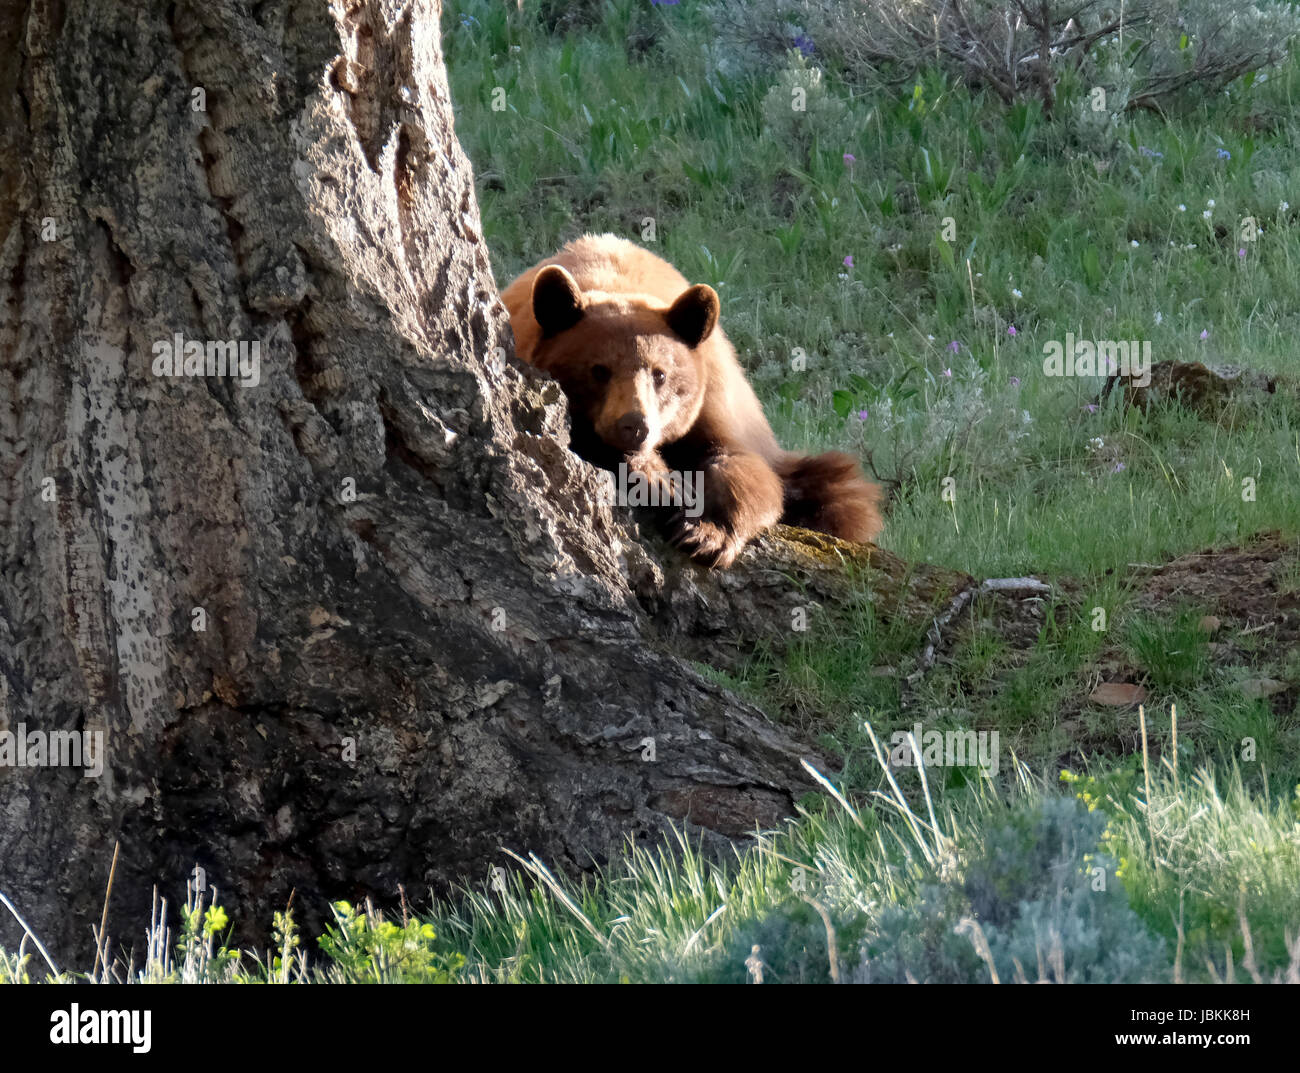 Une femelle ours noir (Ursus americanus) se repose sous un arbre dans le parc national de Yellowstone, Wyoming, USA. Banque D'Images